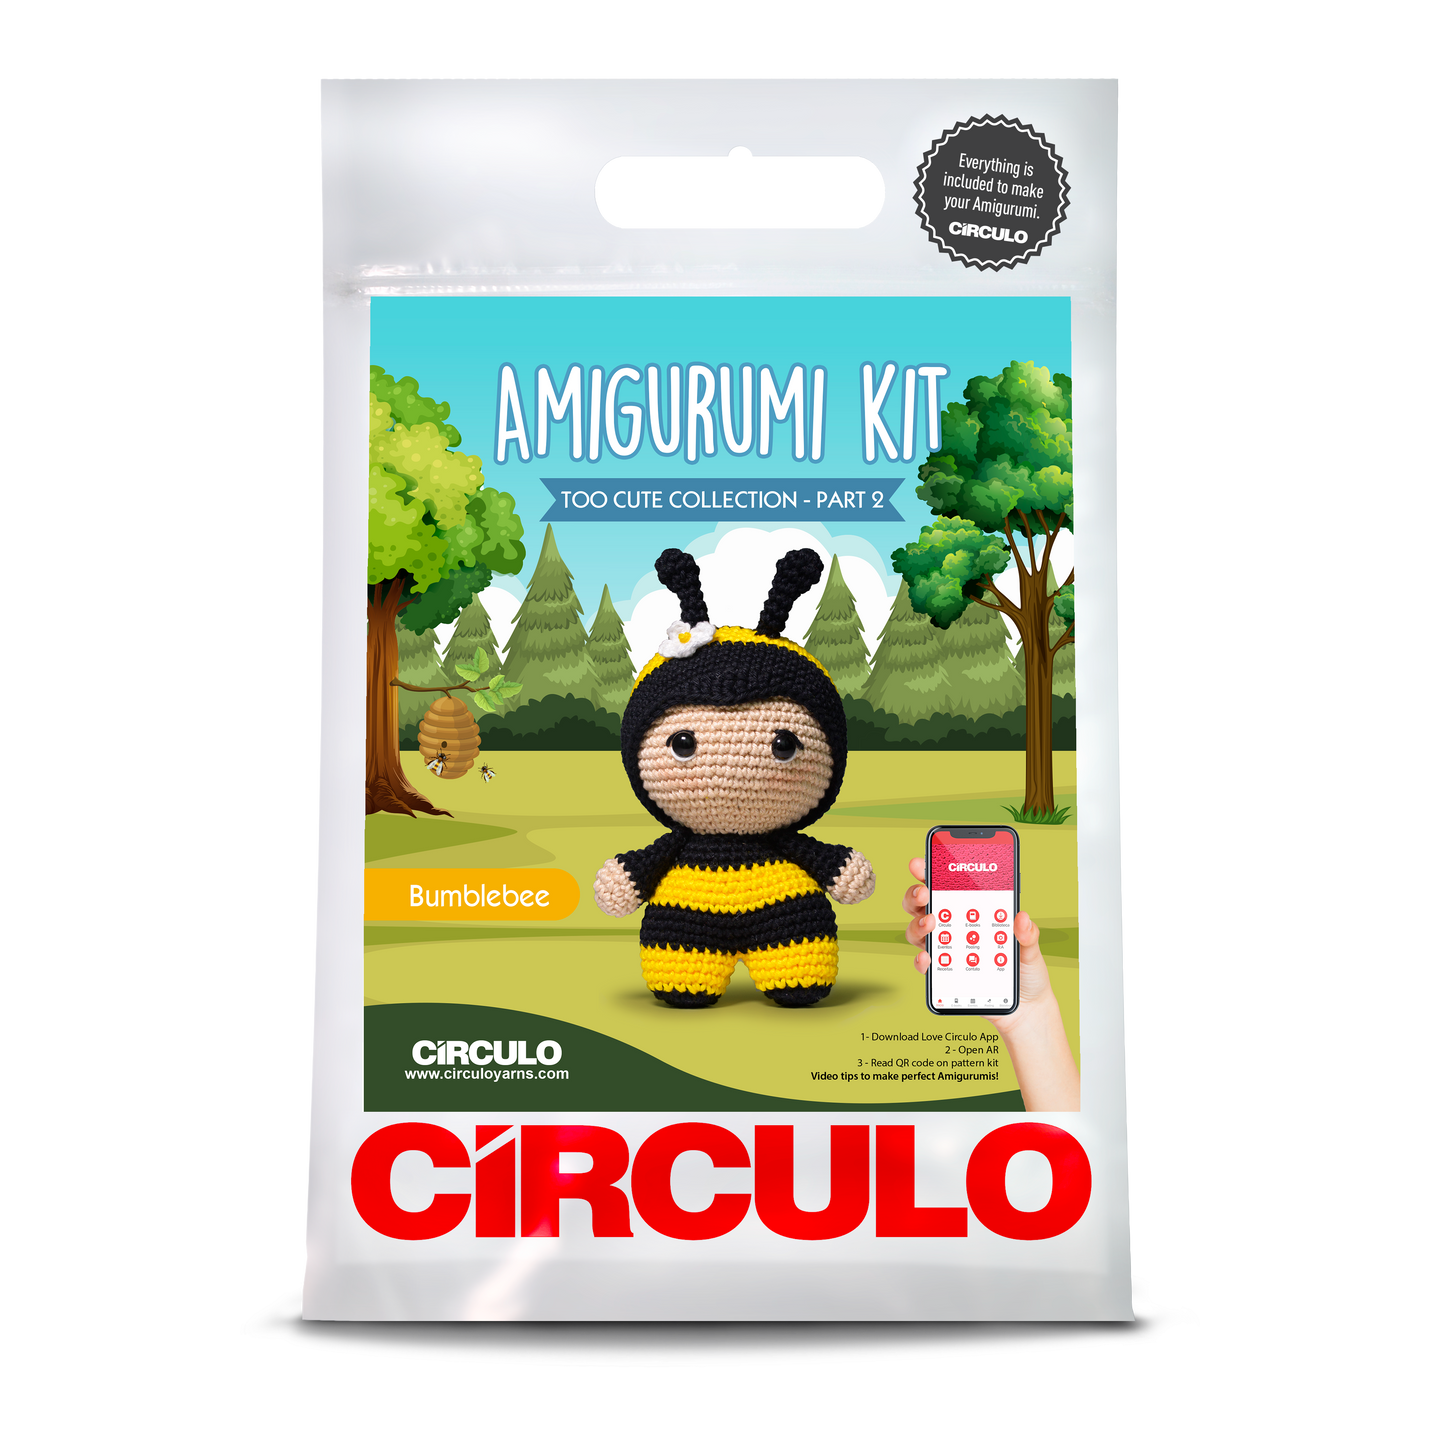 Circulo Amigurumi Kits Too Cute 2